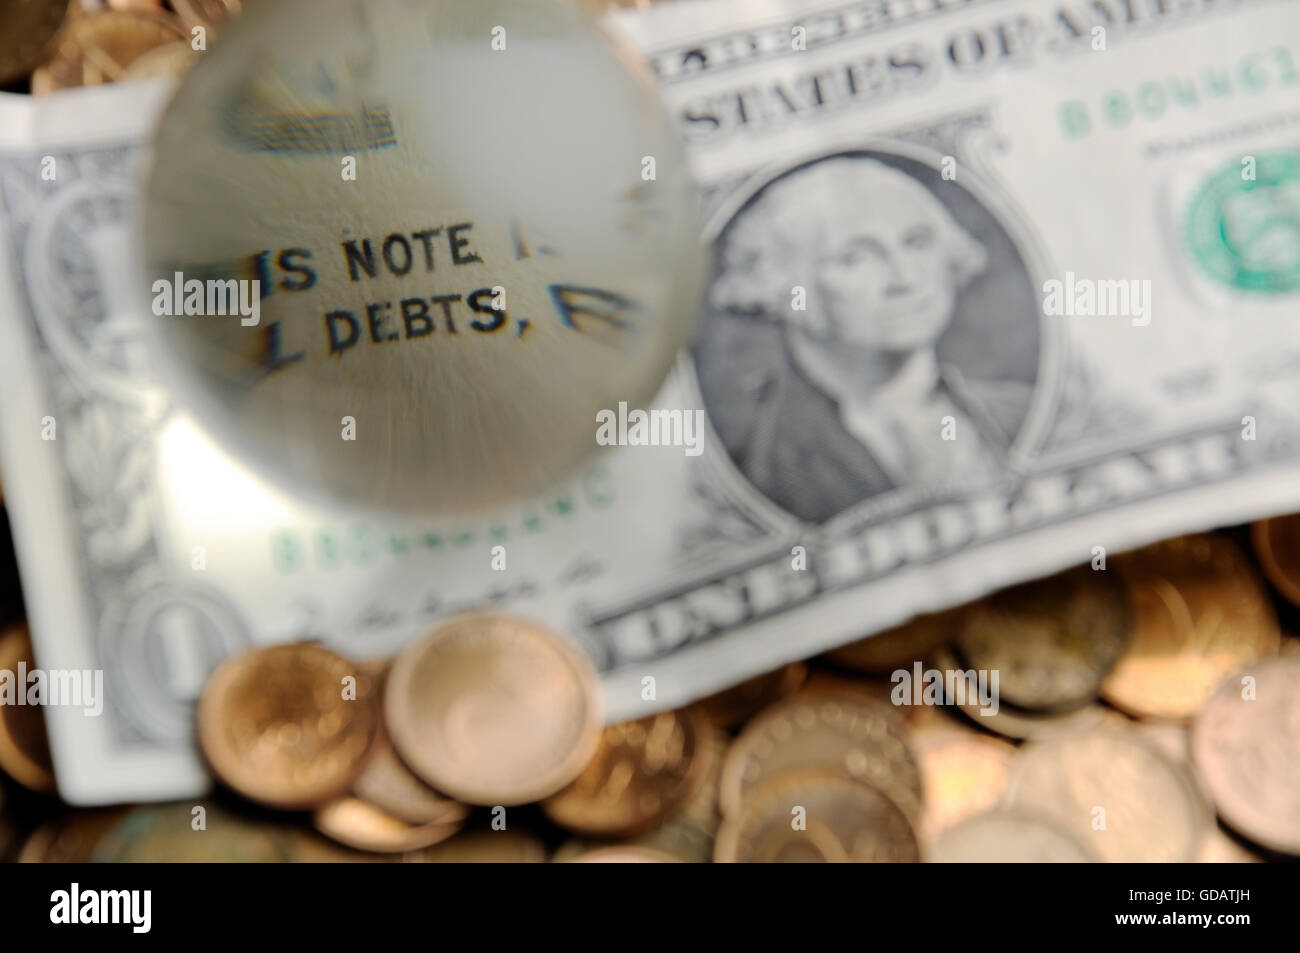 Globe en verre et la réflexion de dollar bill - note de discussion sur les dettes Banque D'Images